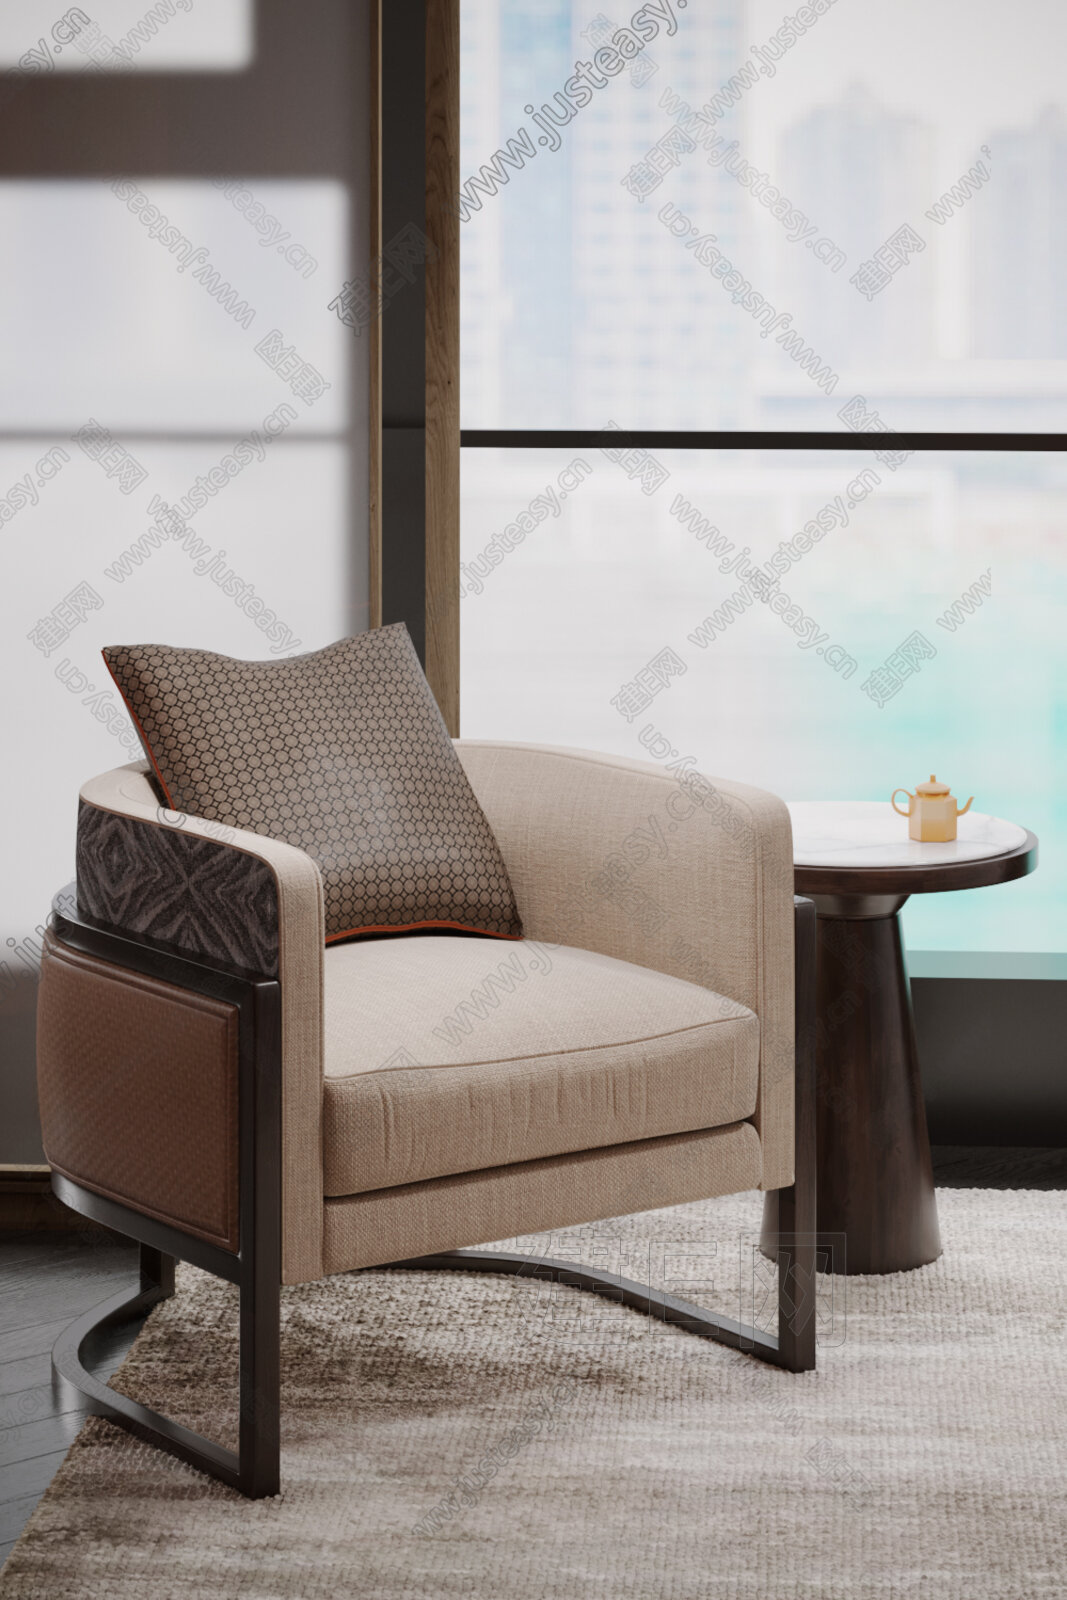 新中式单人沙发3d模型